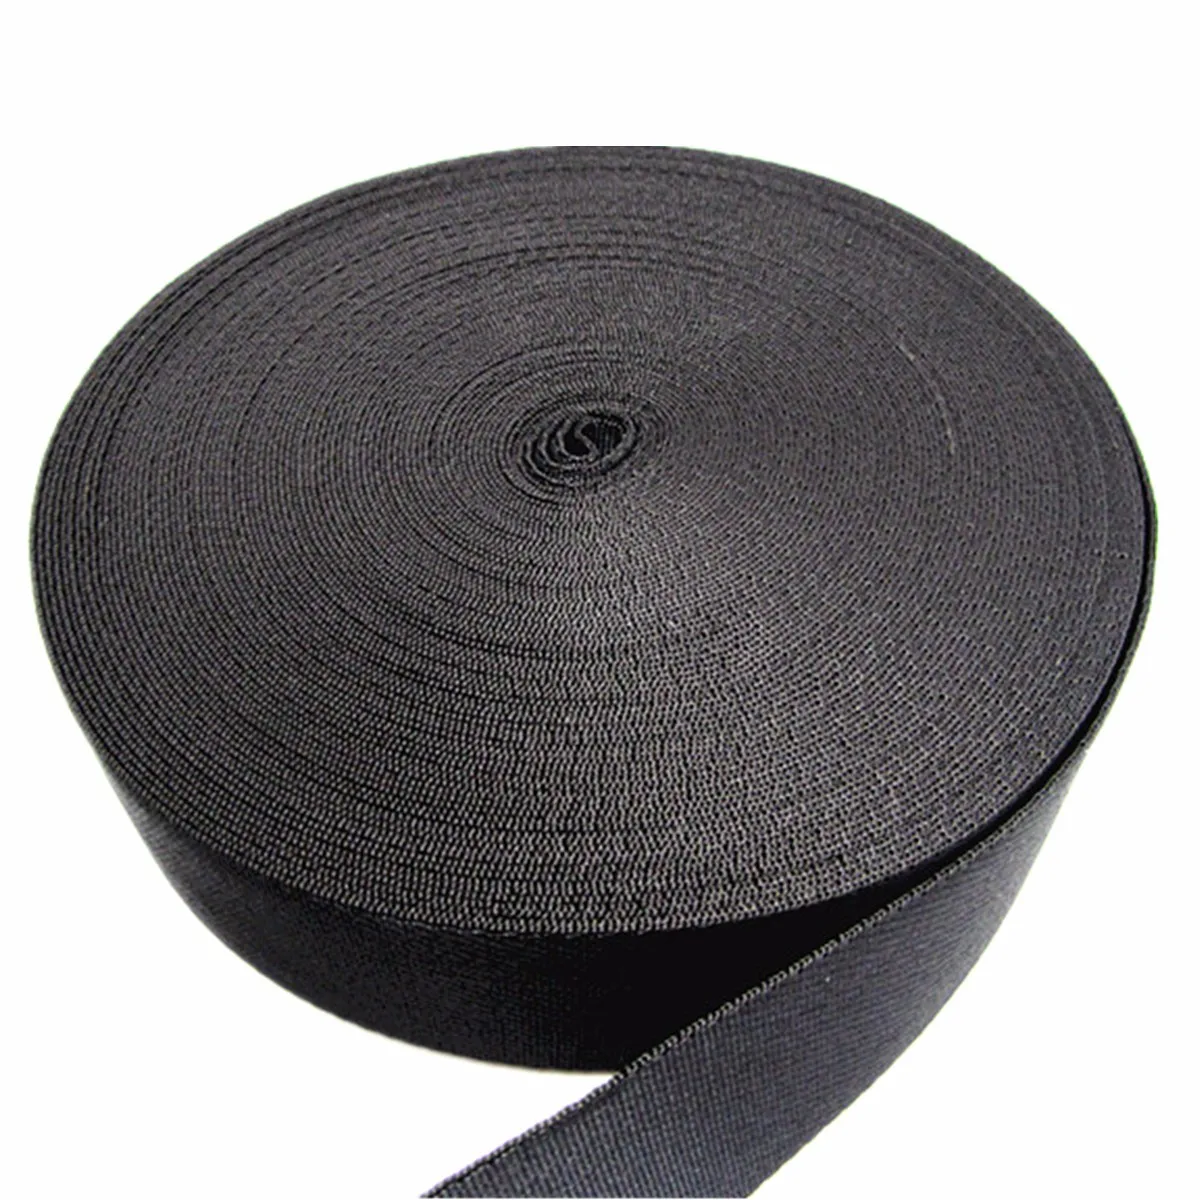 50 мм x 10 метров Черная нейлоновая сетчатая лента Обрезка ремень швейные ткани DIY Изготовление одежды ремесла обвязка сумки ремень